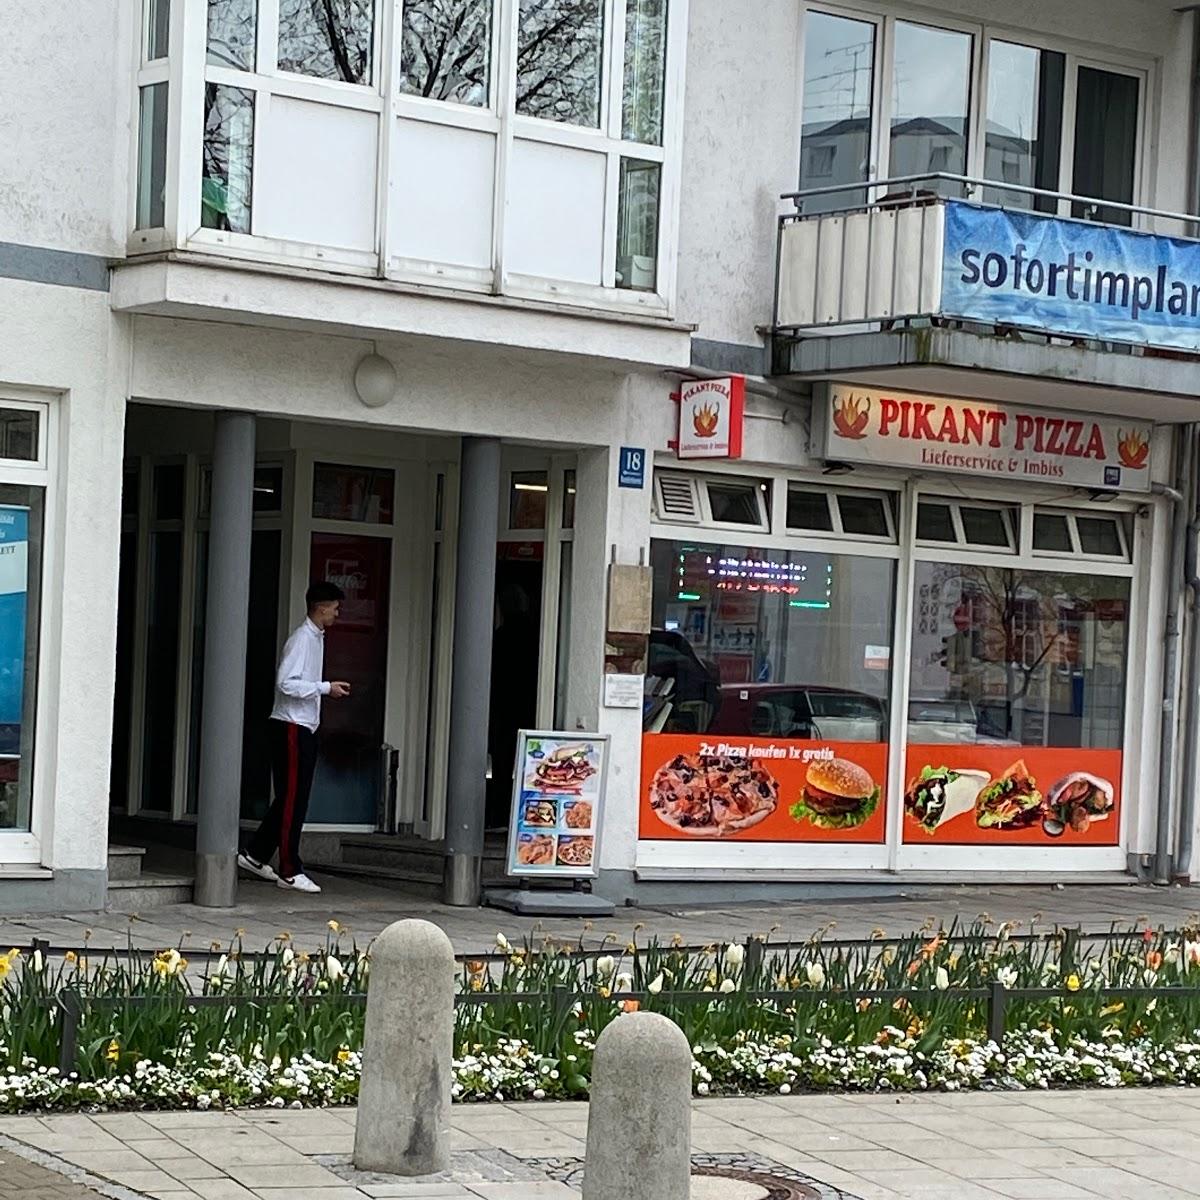 Restaurant "Pikant Pizza" in München